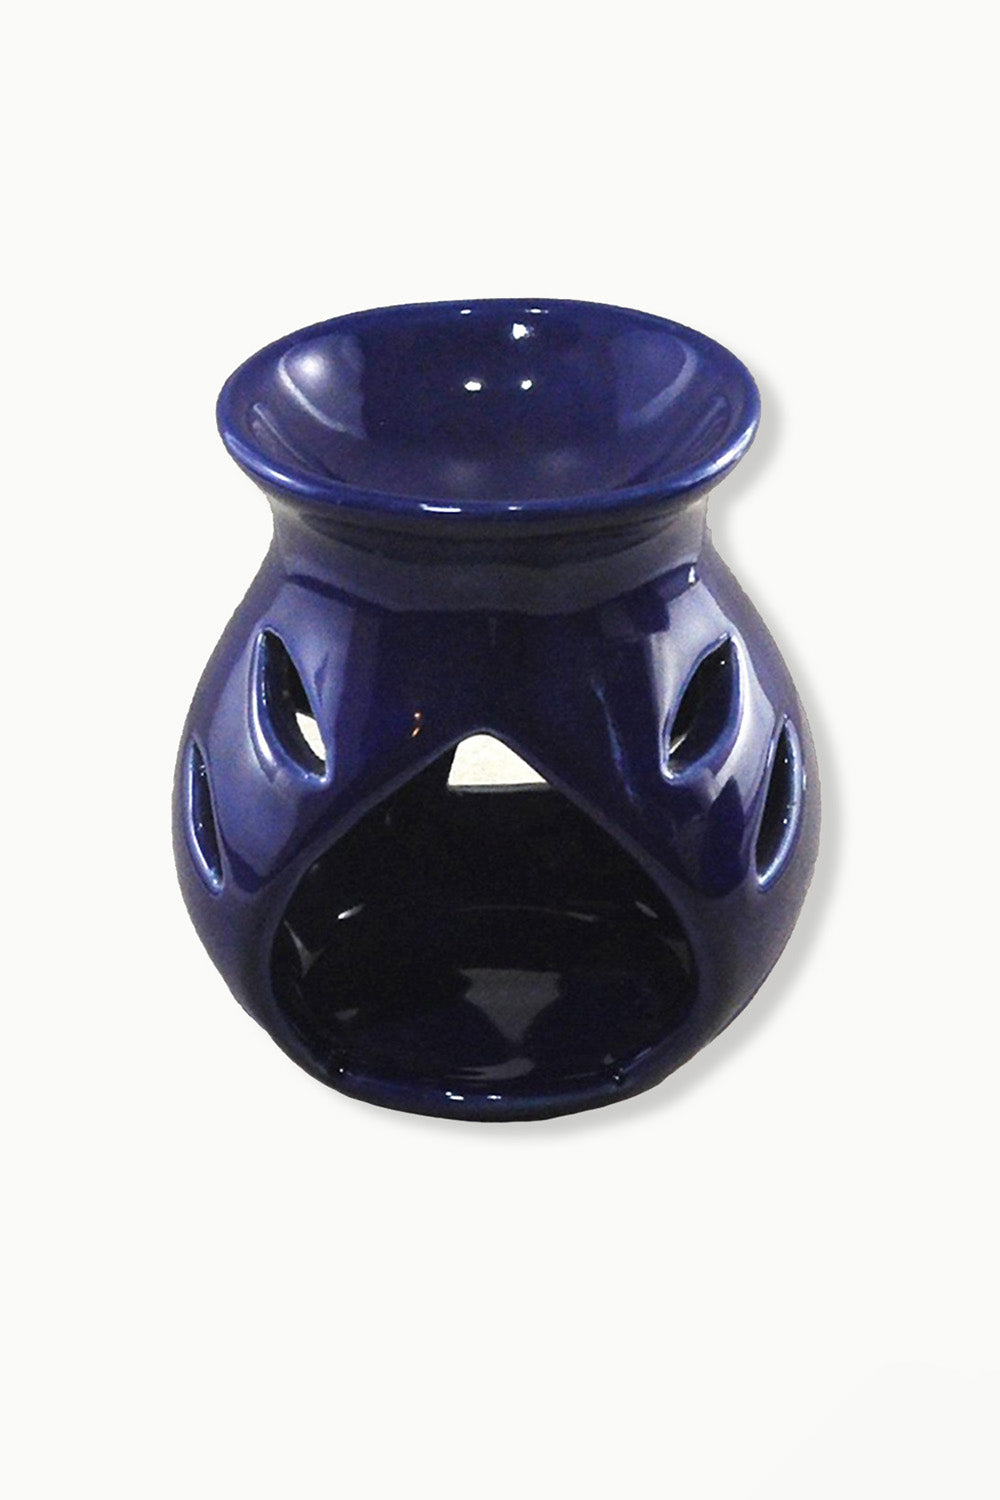 Blue Ceramic Decorative Essential Oil Diffuser